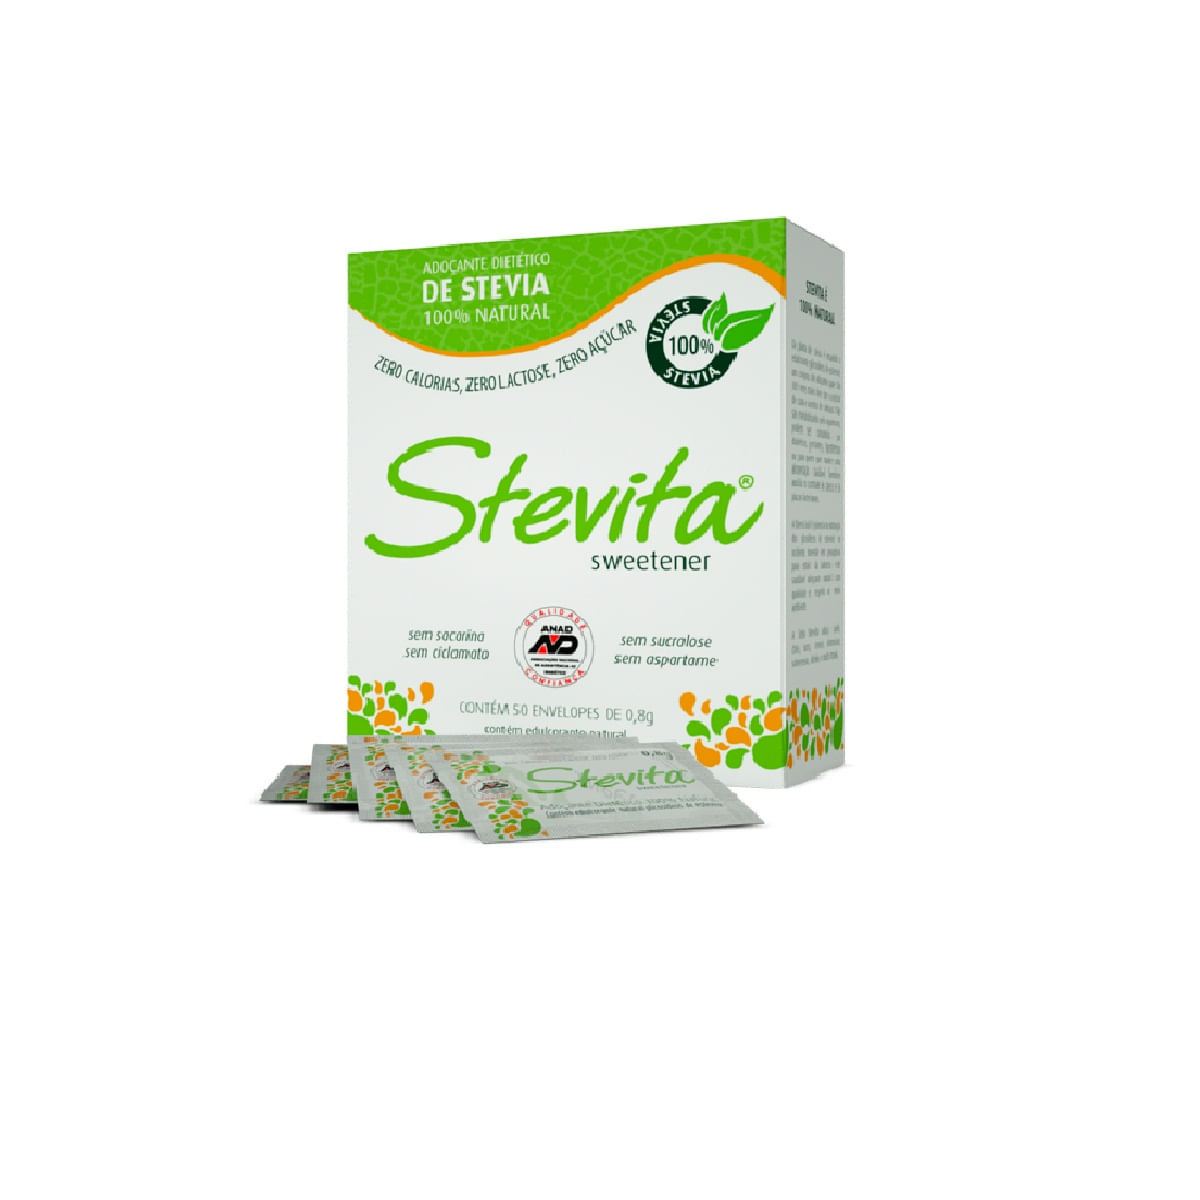 Adoçante sucralose c/ stevia fit sachê - Stevita - 01 cx c/ 50 sachês, Fique Bem